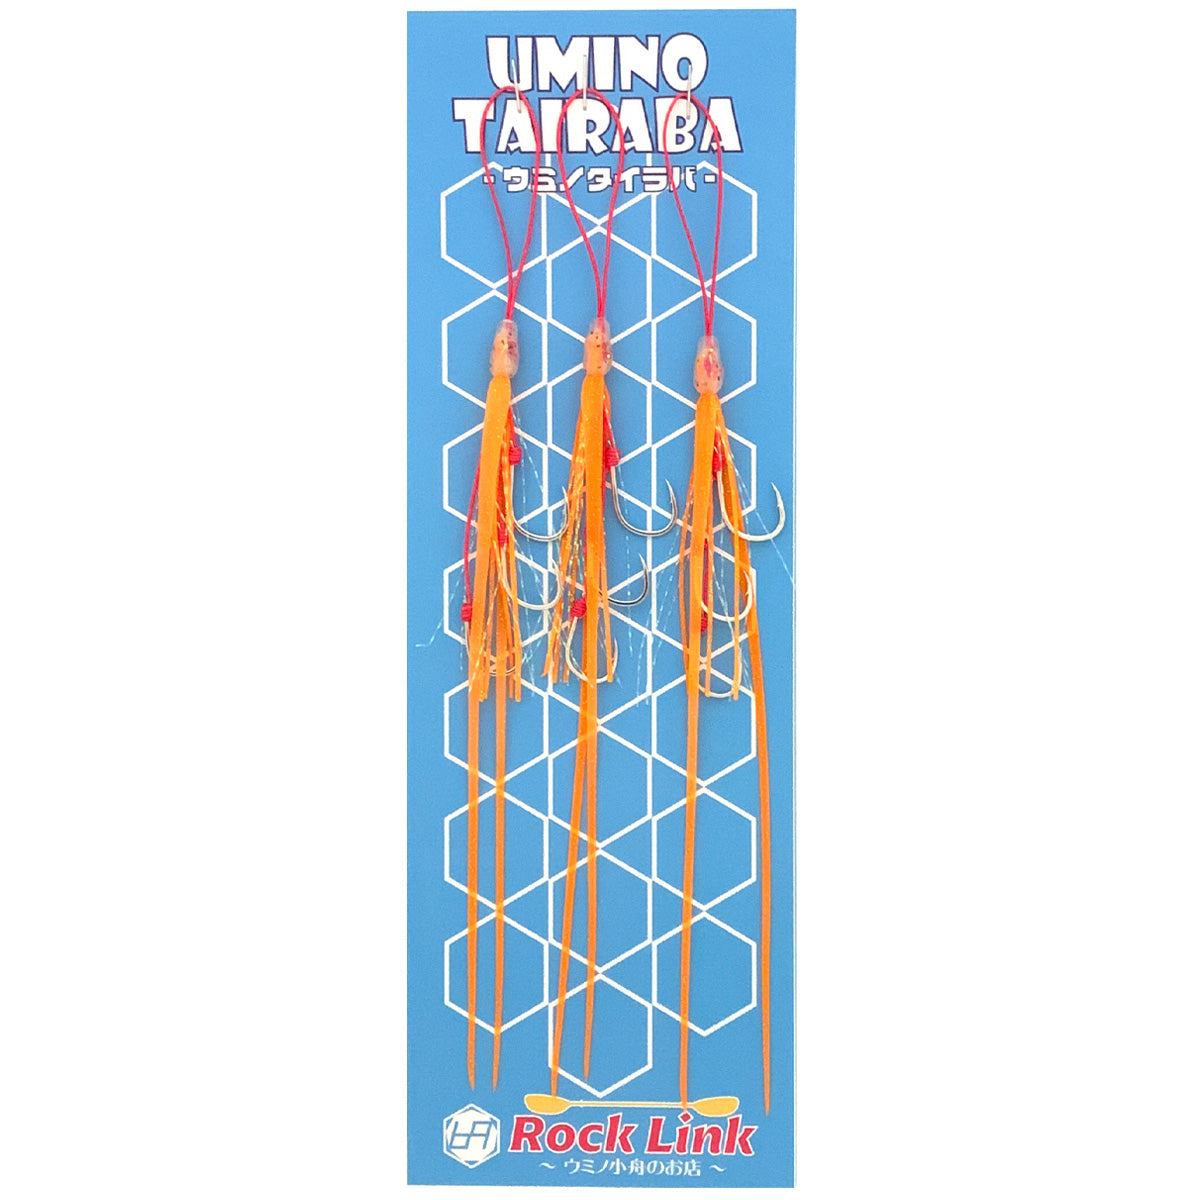 UMINO (ウミノ) タイラバ ビビ 微波動ネクタイ 超極細ツインストレート 3本フック 3セット入